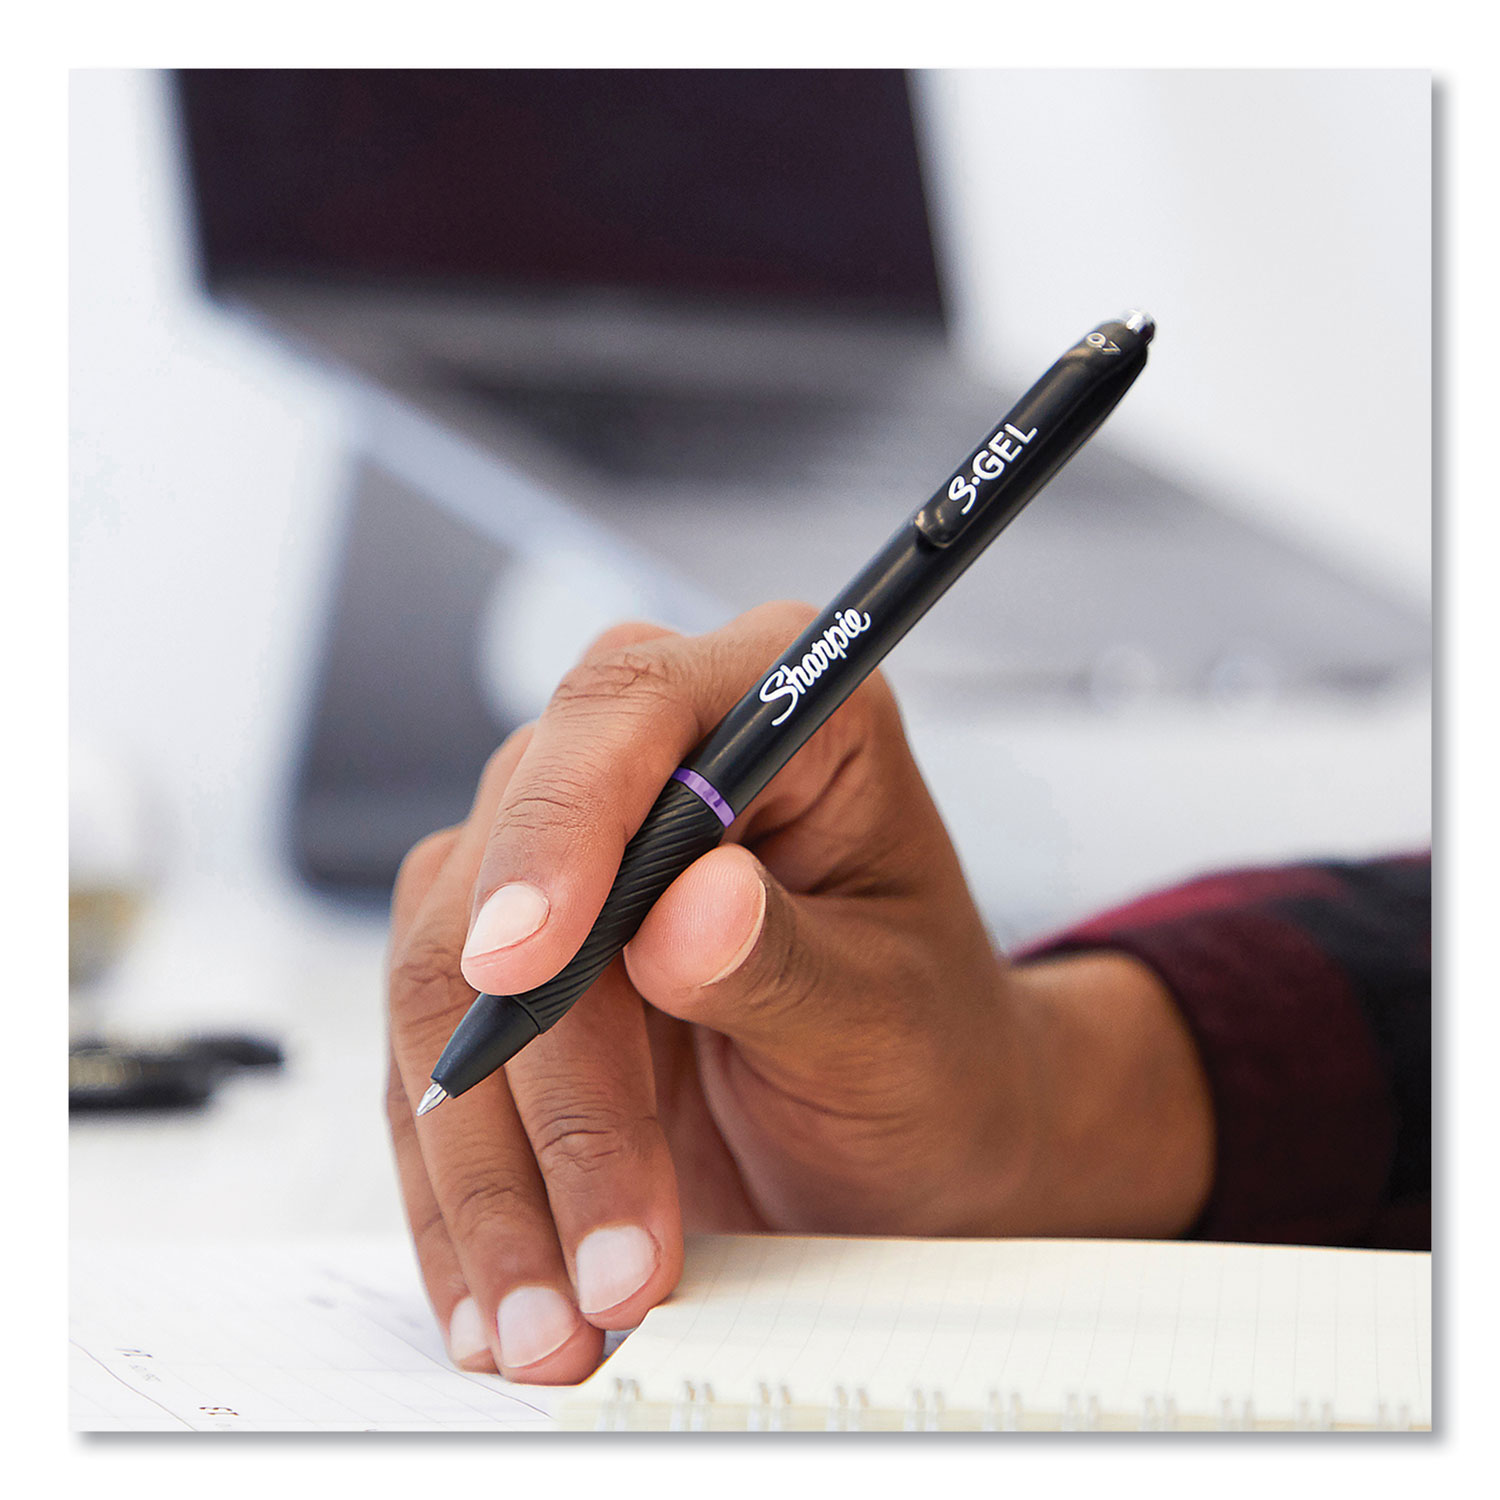 Sharpie S-Gel High-Performance Gel Pen, Retractable, Medium 0.7 mm, Green Ink, Black Barrel, Dozen